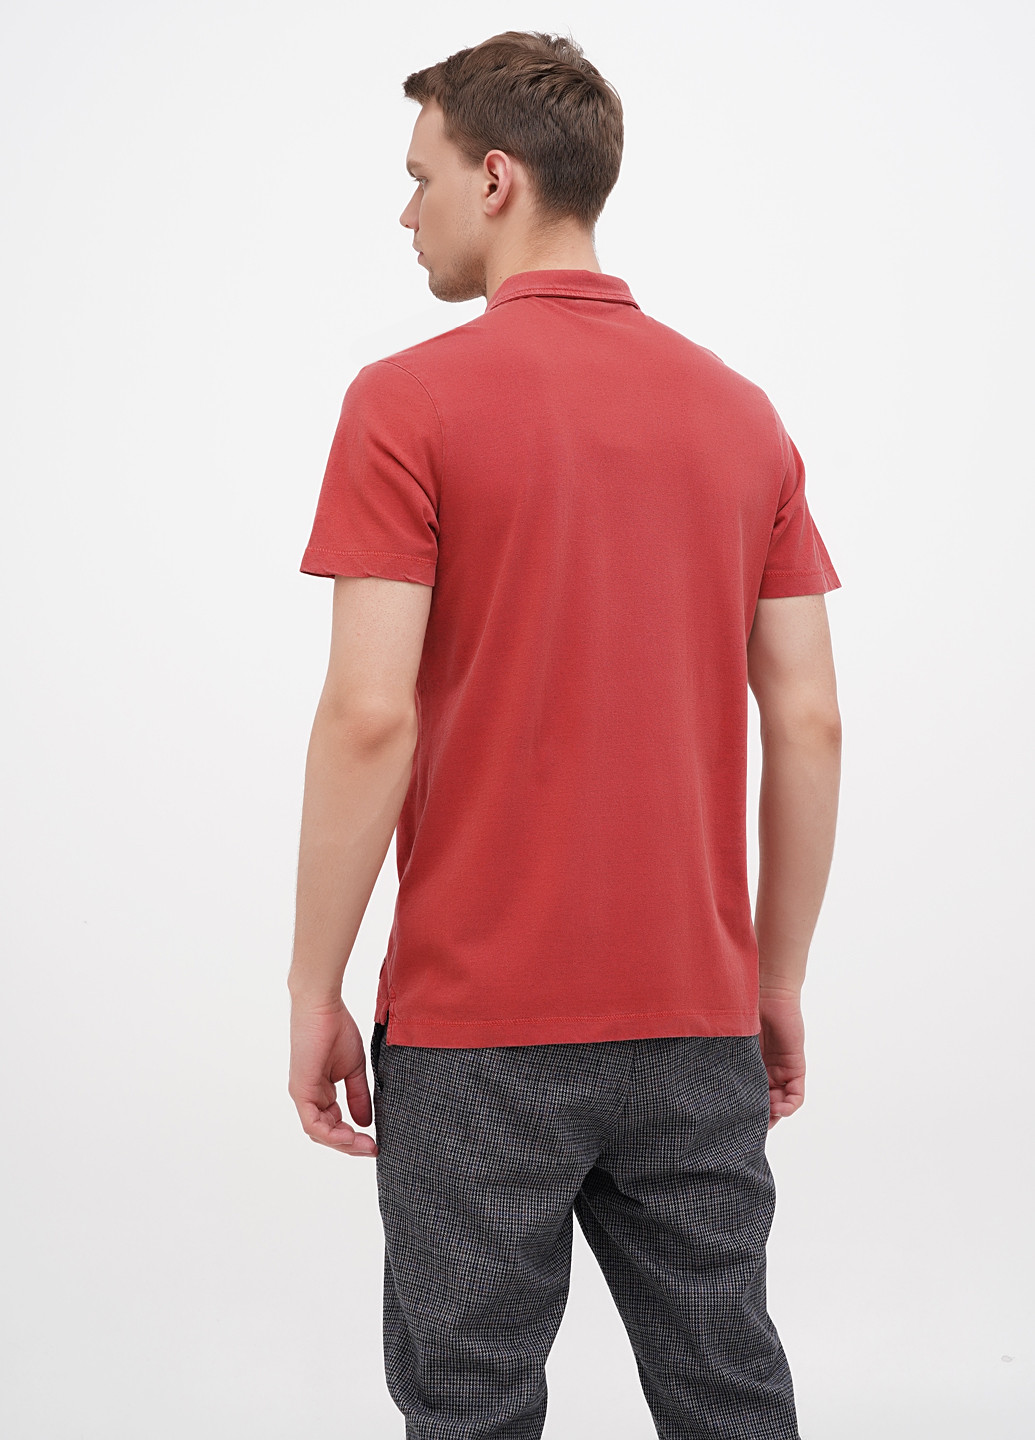 Бордовая футболка-поло для мужчин Lerros однотонная